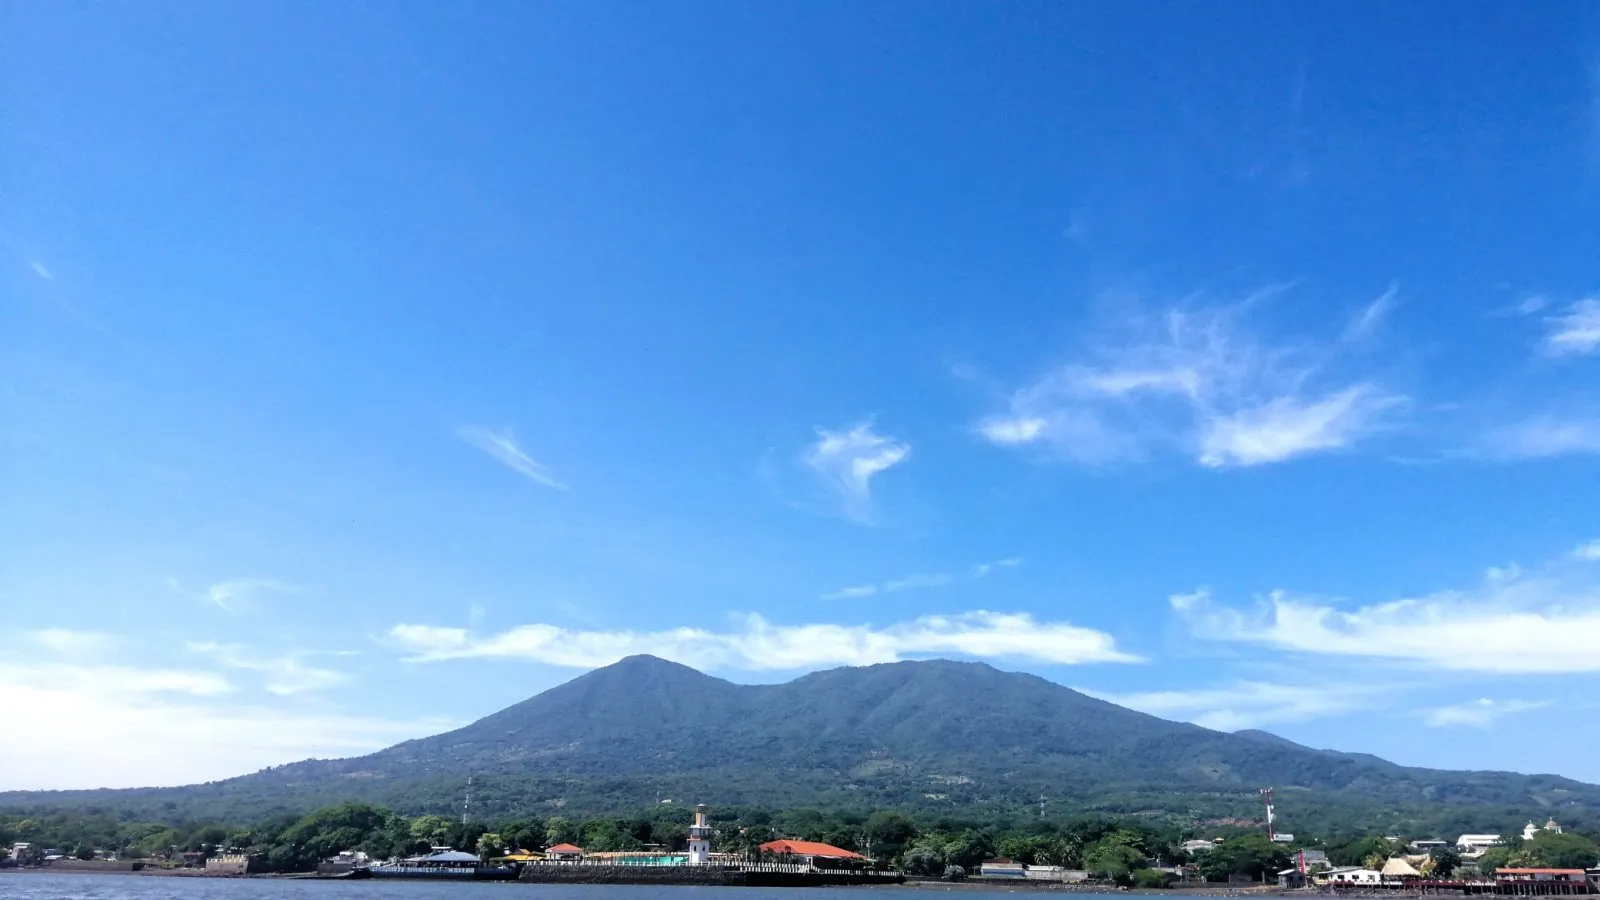 Conchagua volcano in El Salvador